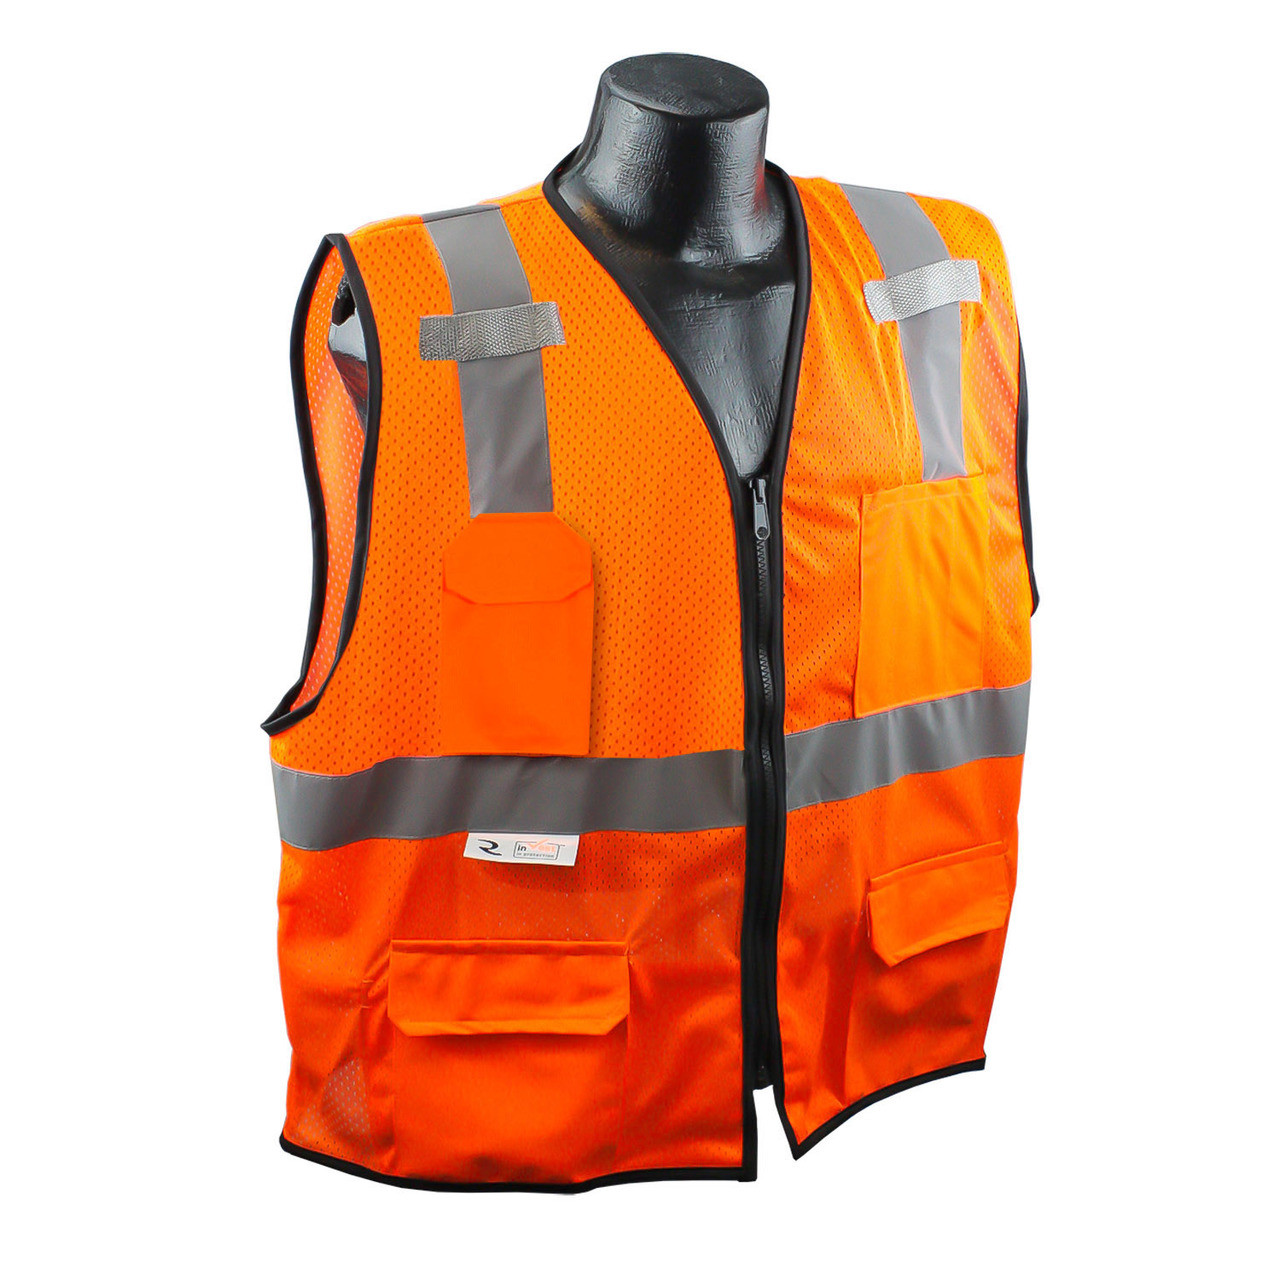 Radians RadWear Two-Tone Class Surveyor Safety Vest Lime, XL, Model# SV - 5